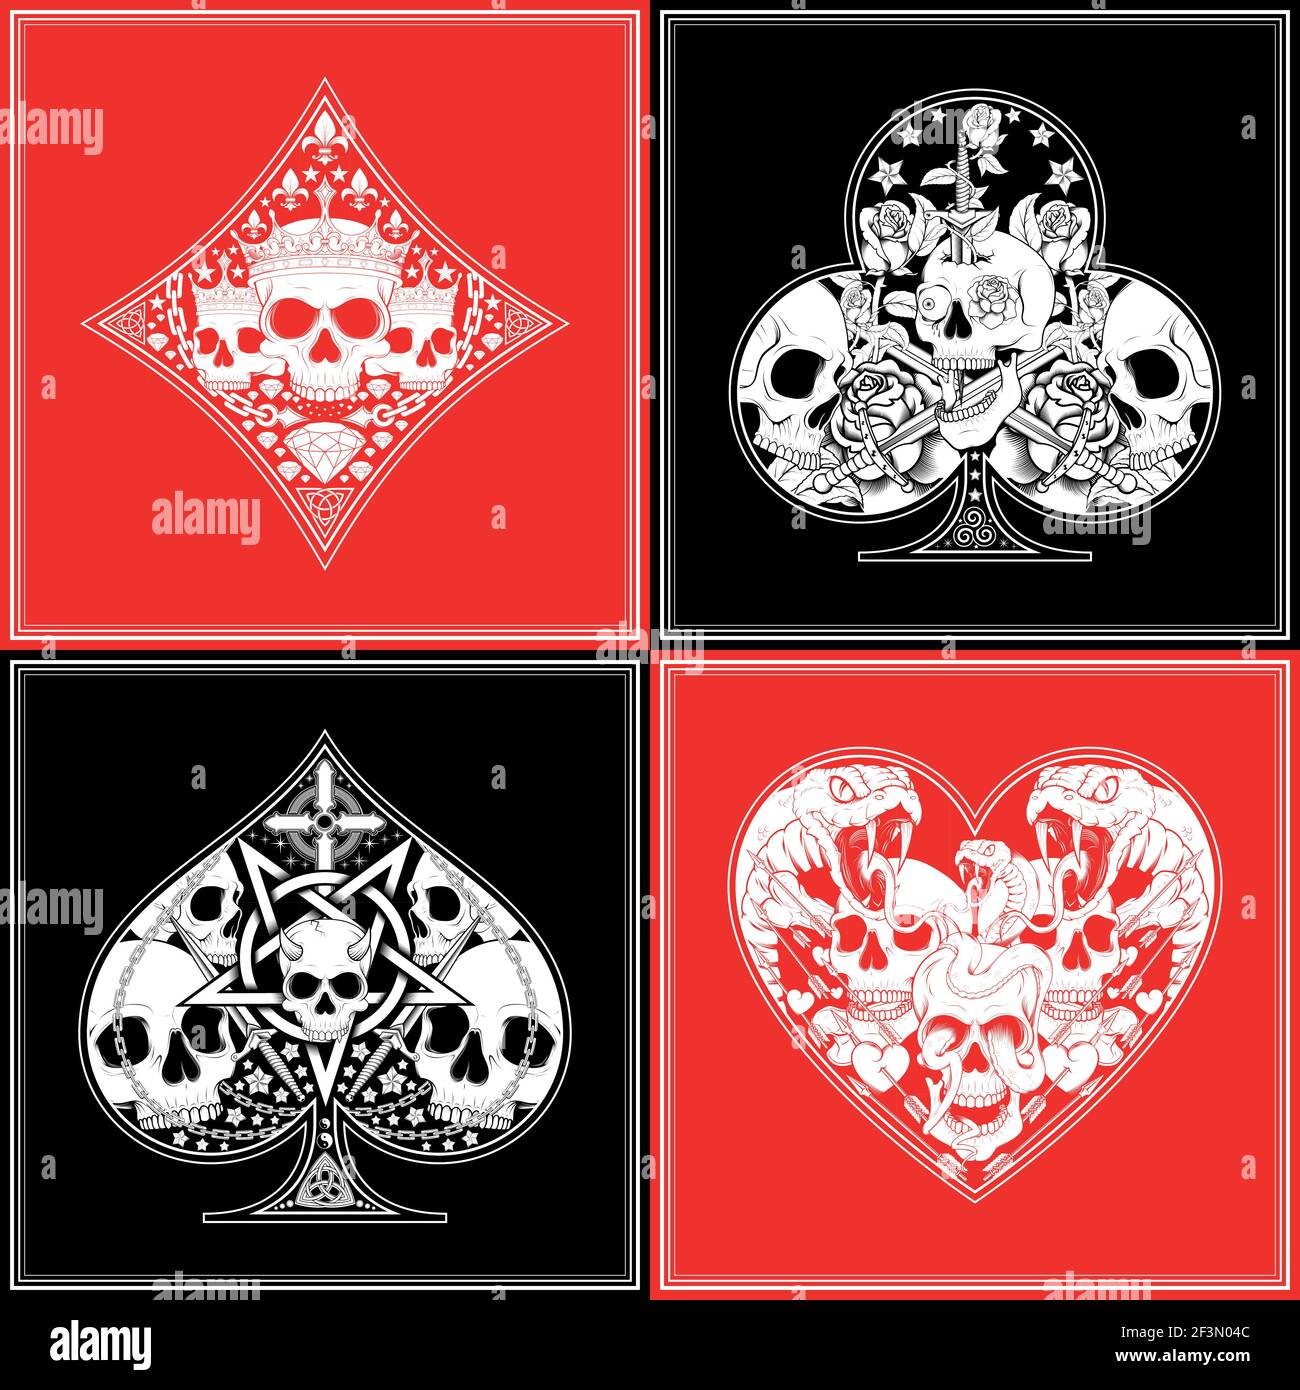 Dessin vectoriel du motif de poker, avec les symboles du trèfle, de l'as, des diamants et du coeur, avec des crânes Illustration de Vecteur